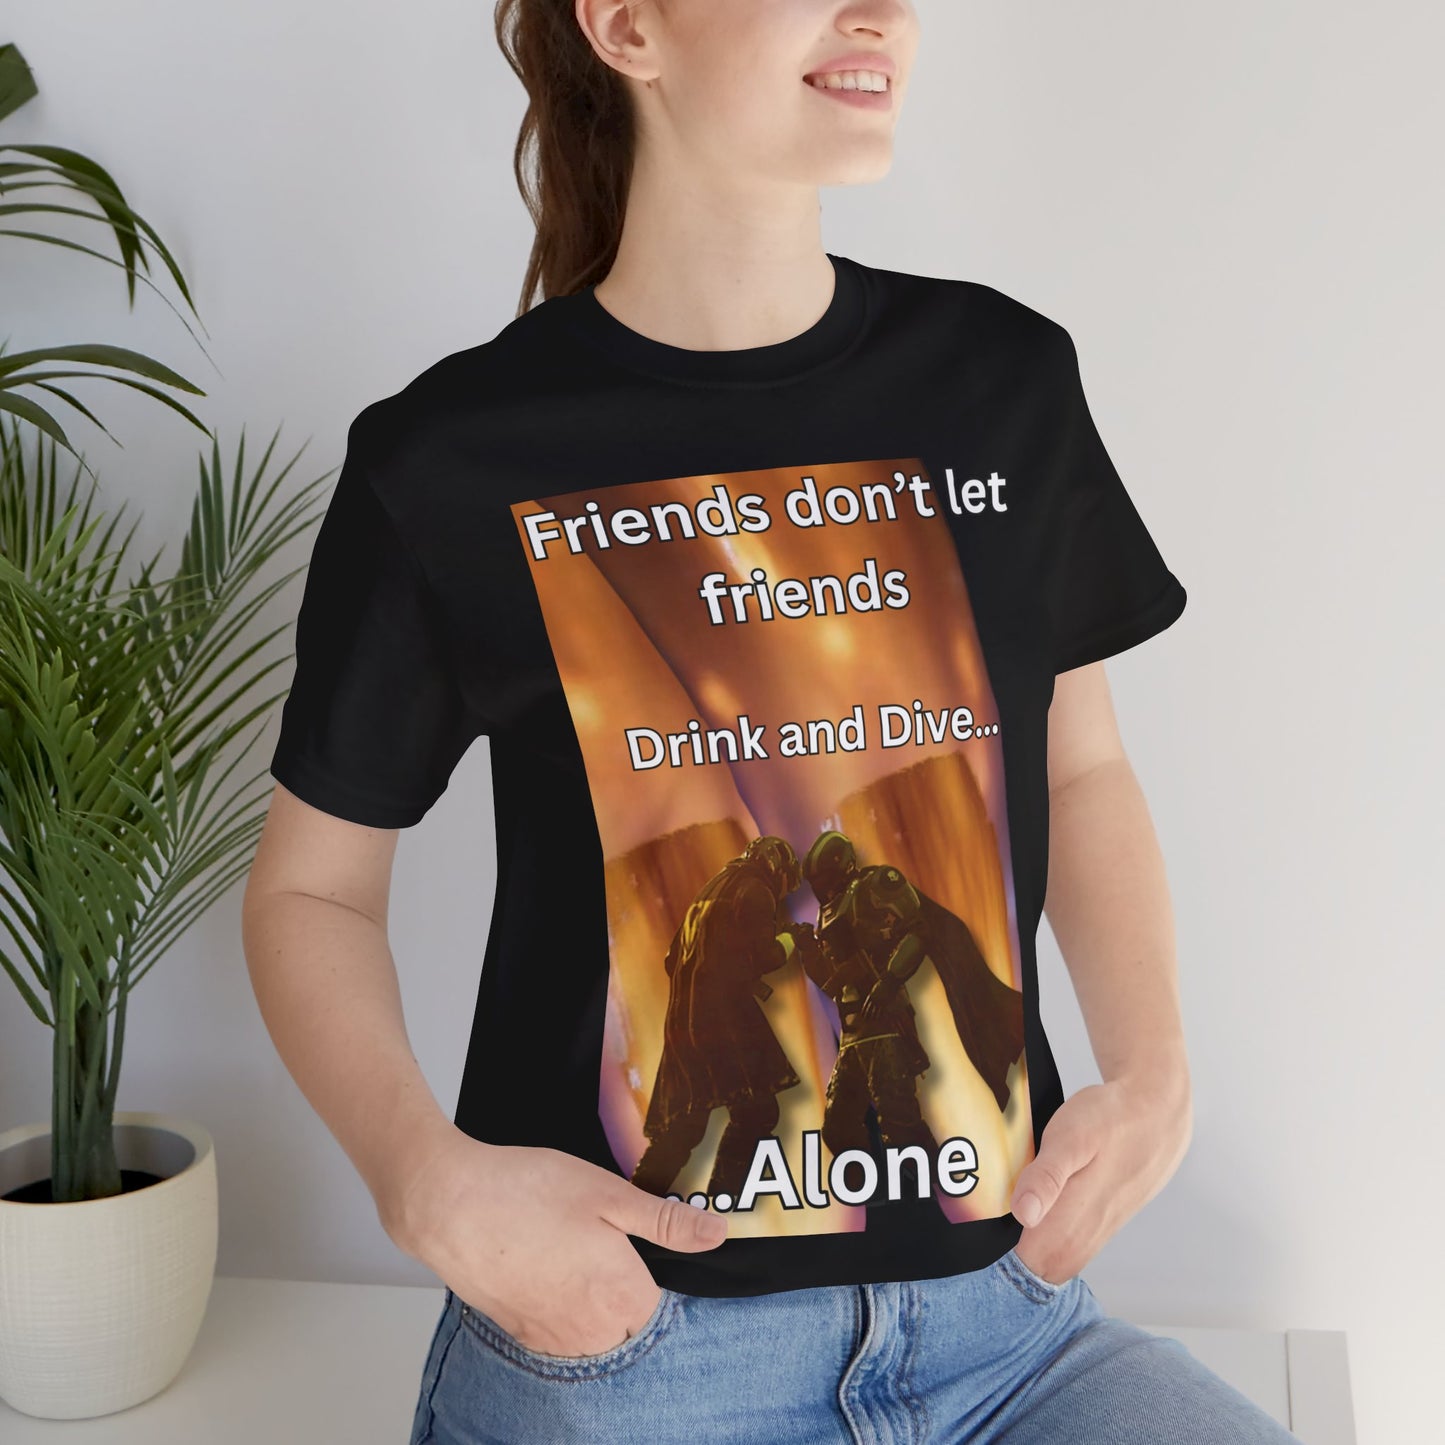 Friends don't let friends dive alone.